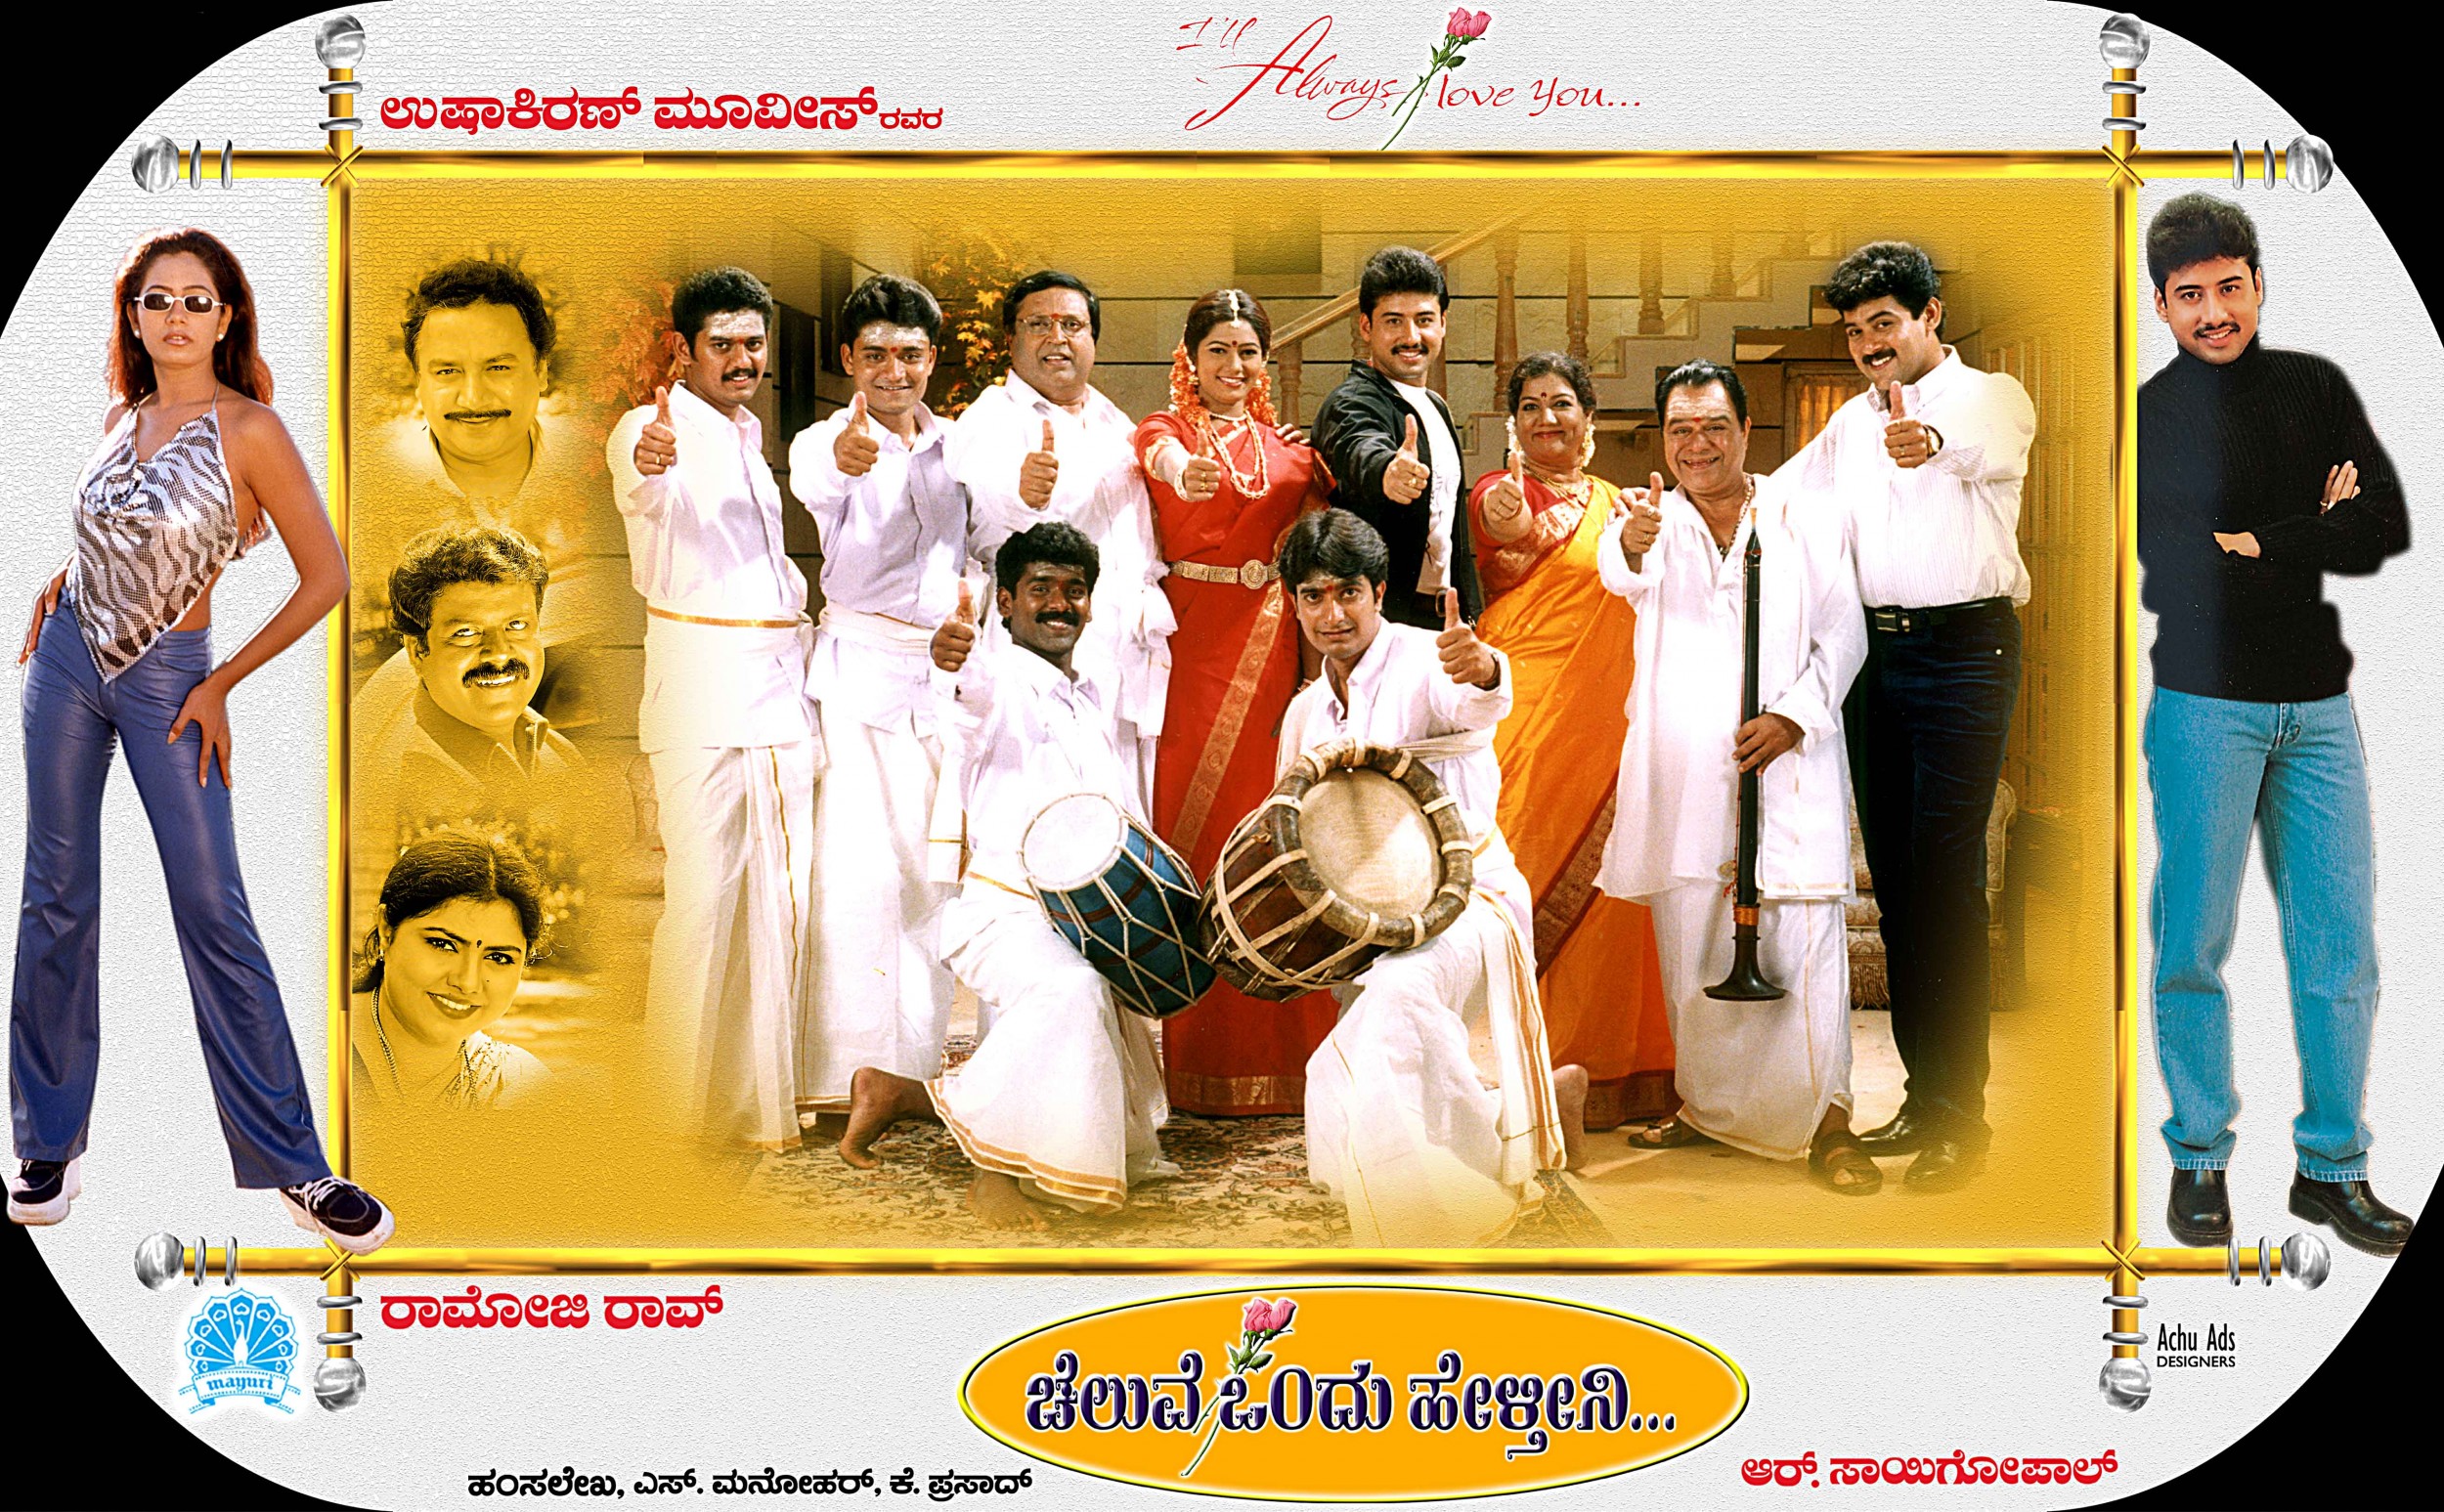 Mega Sized Movie Poster Image for Cheluve Ondu Helthini (#2 of 5)